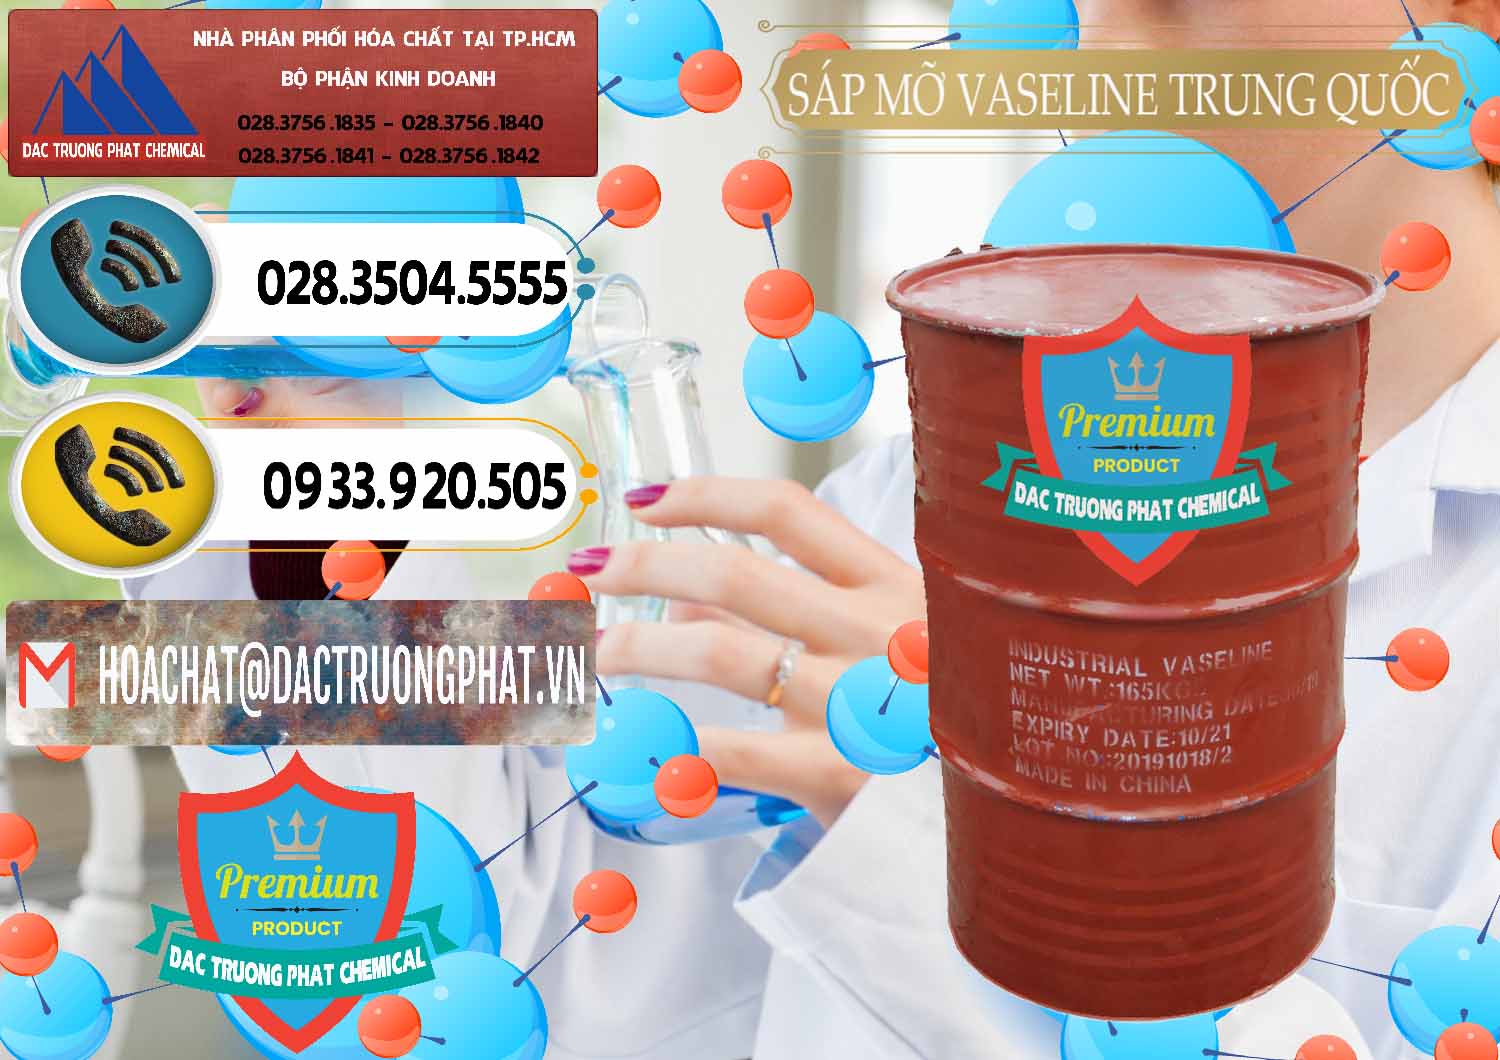 Công ty chuyên phân phối ( bán ) Sáp Mỡ Vaseline Trung Quốc China - 0122 - Phân phối ( bán ) hóa chất tại TP.HCM - hoachatdetnhuom.vn